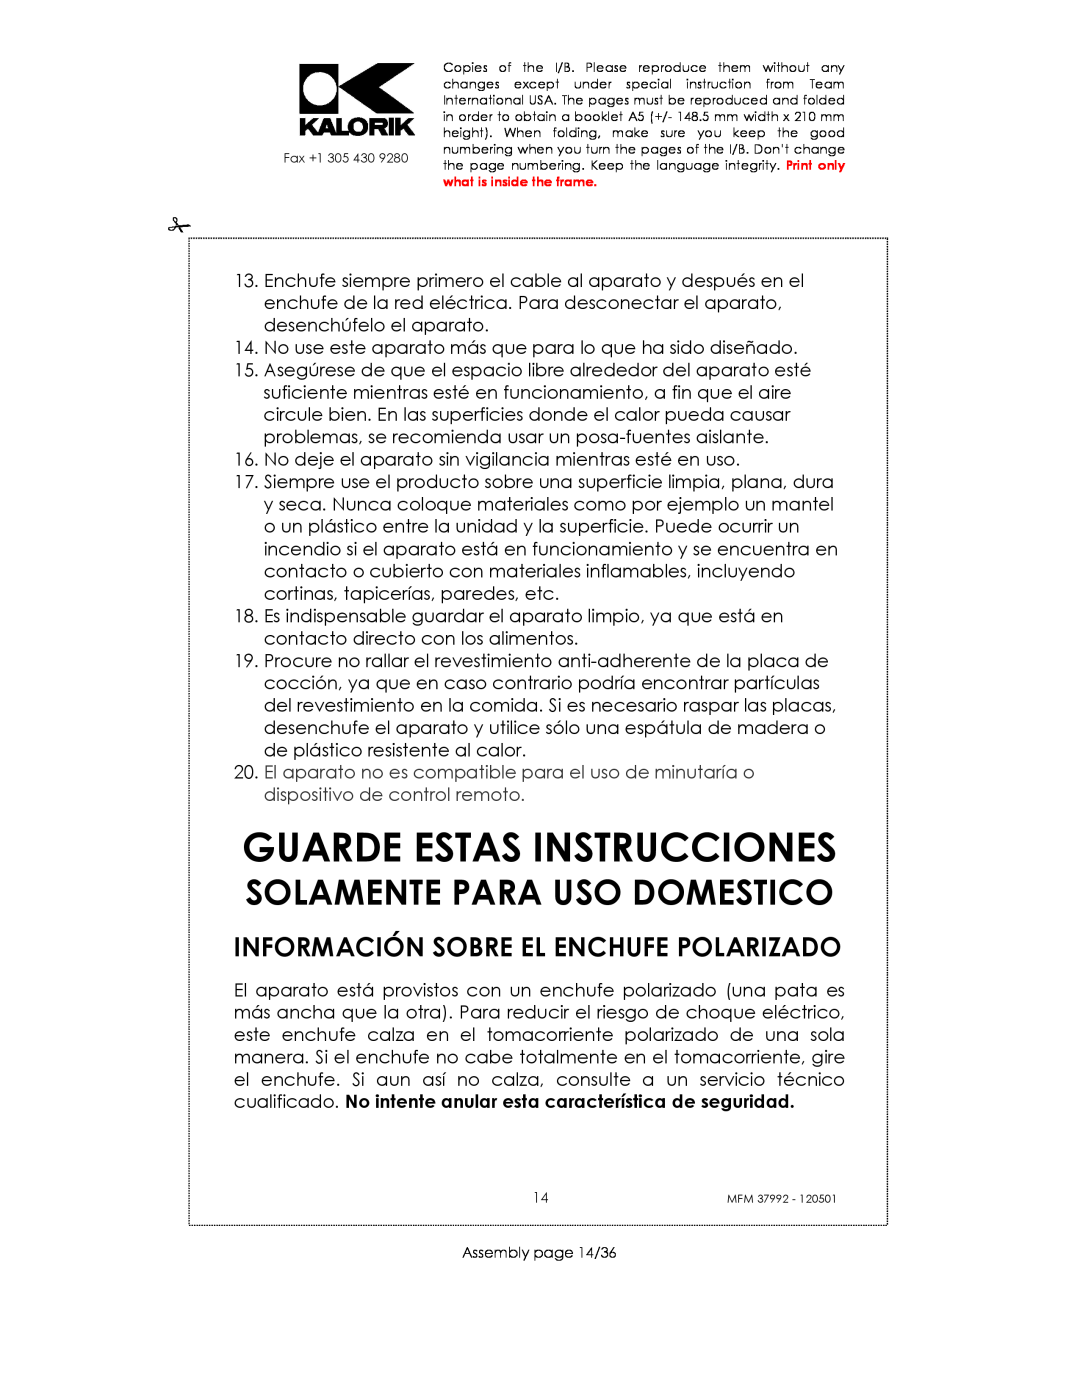 Kalorik MFM 37992 manual Guarde Estas Instrucciones, Información Sobre El Enchufe Polarizado, Solamente Para Uso Domestico 